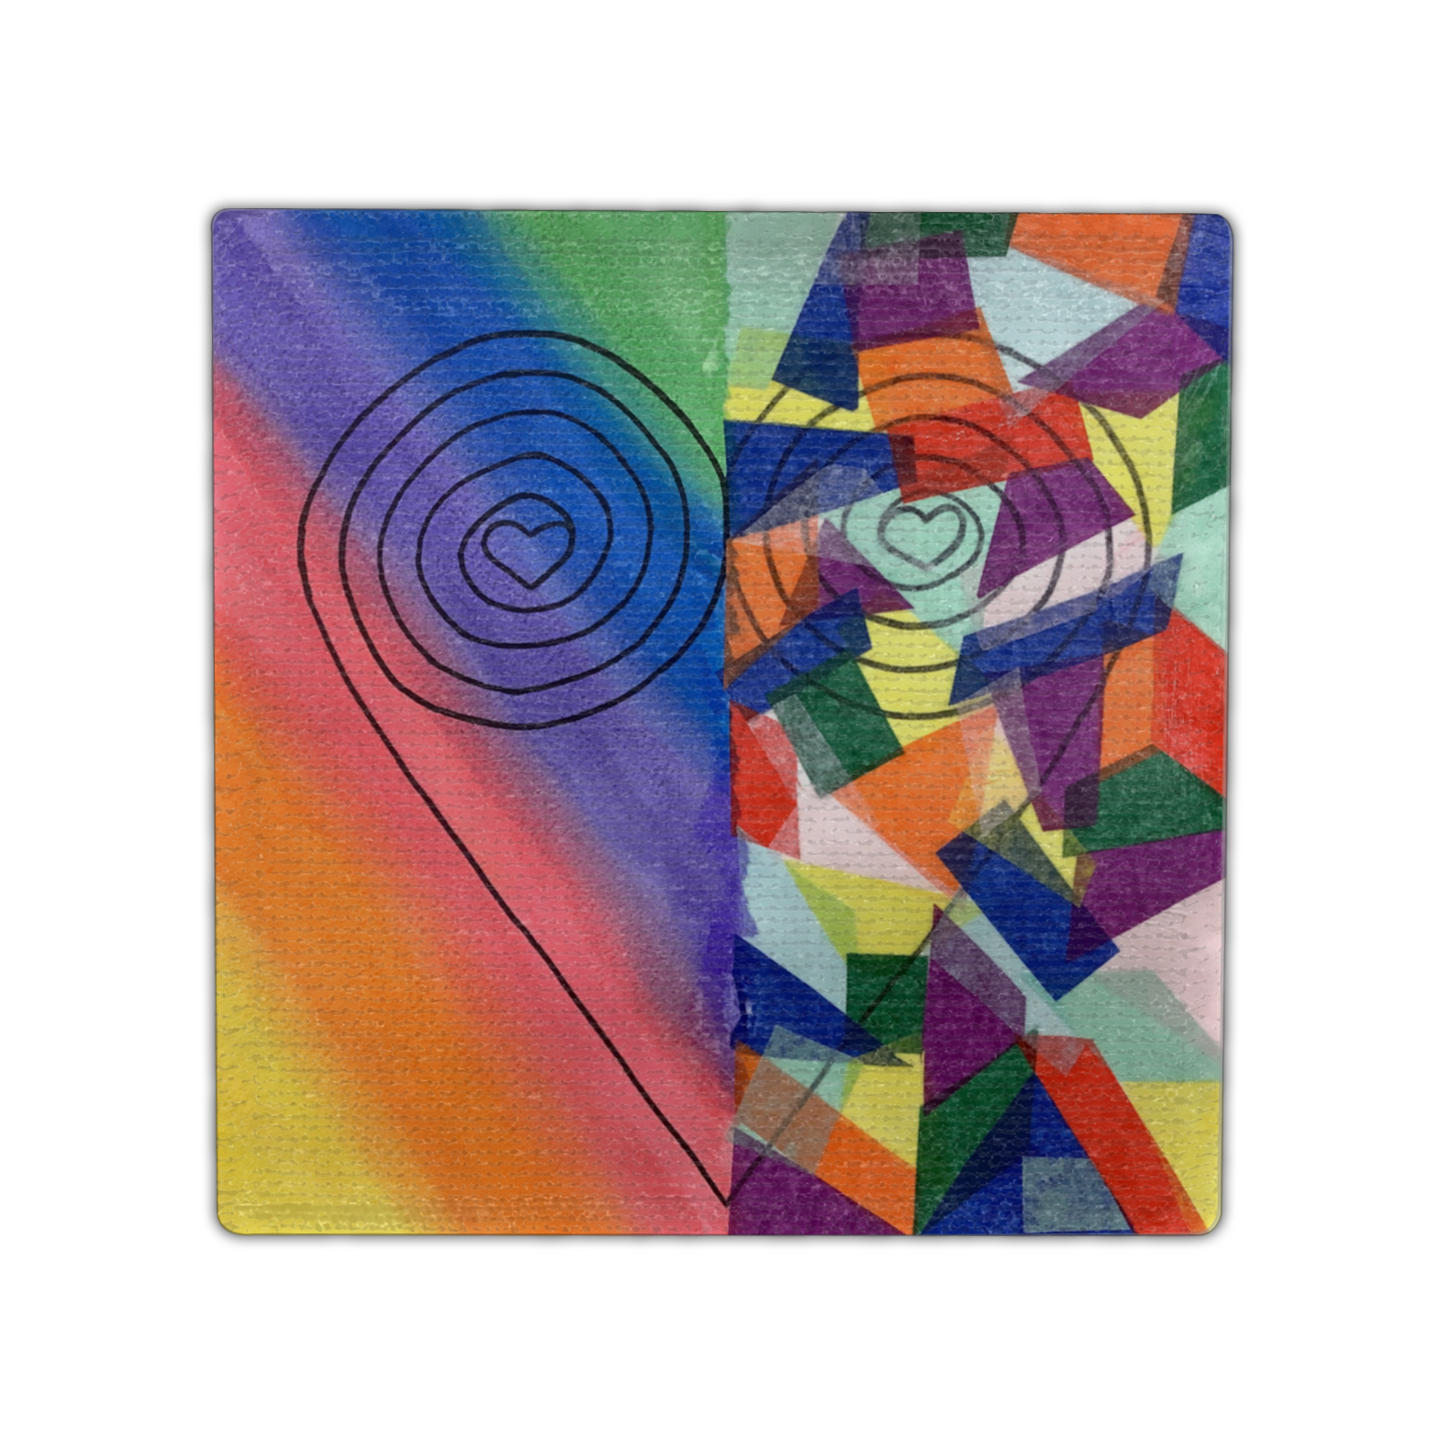 Twist Hearts "Asymmetry" Single Linen Coaster